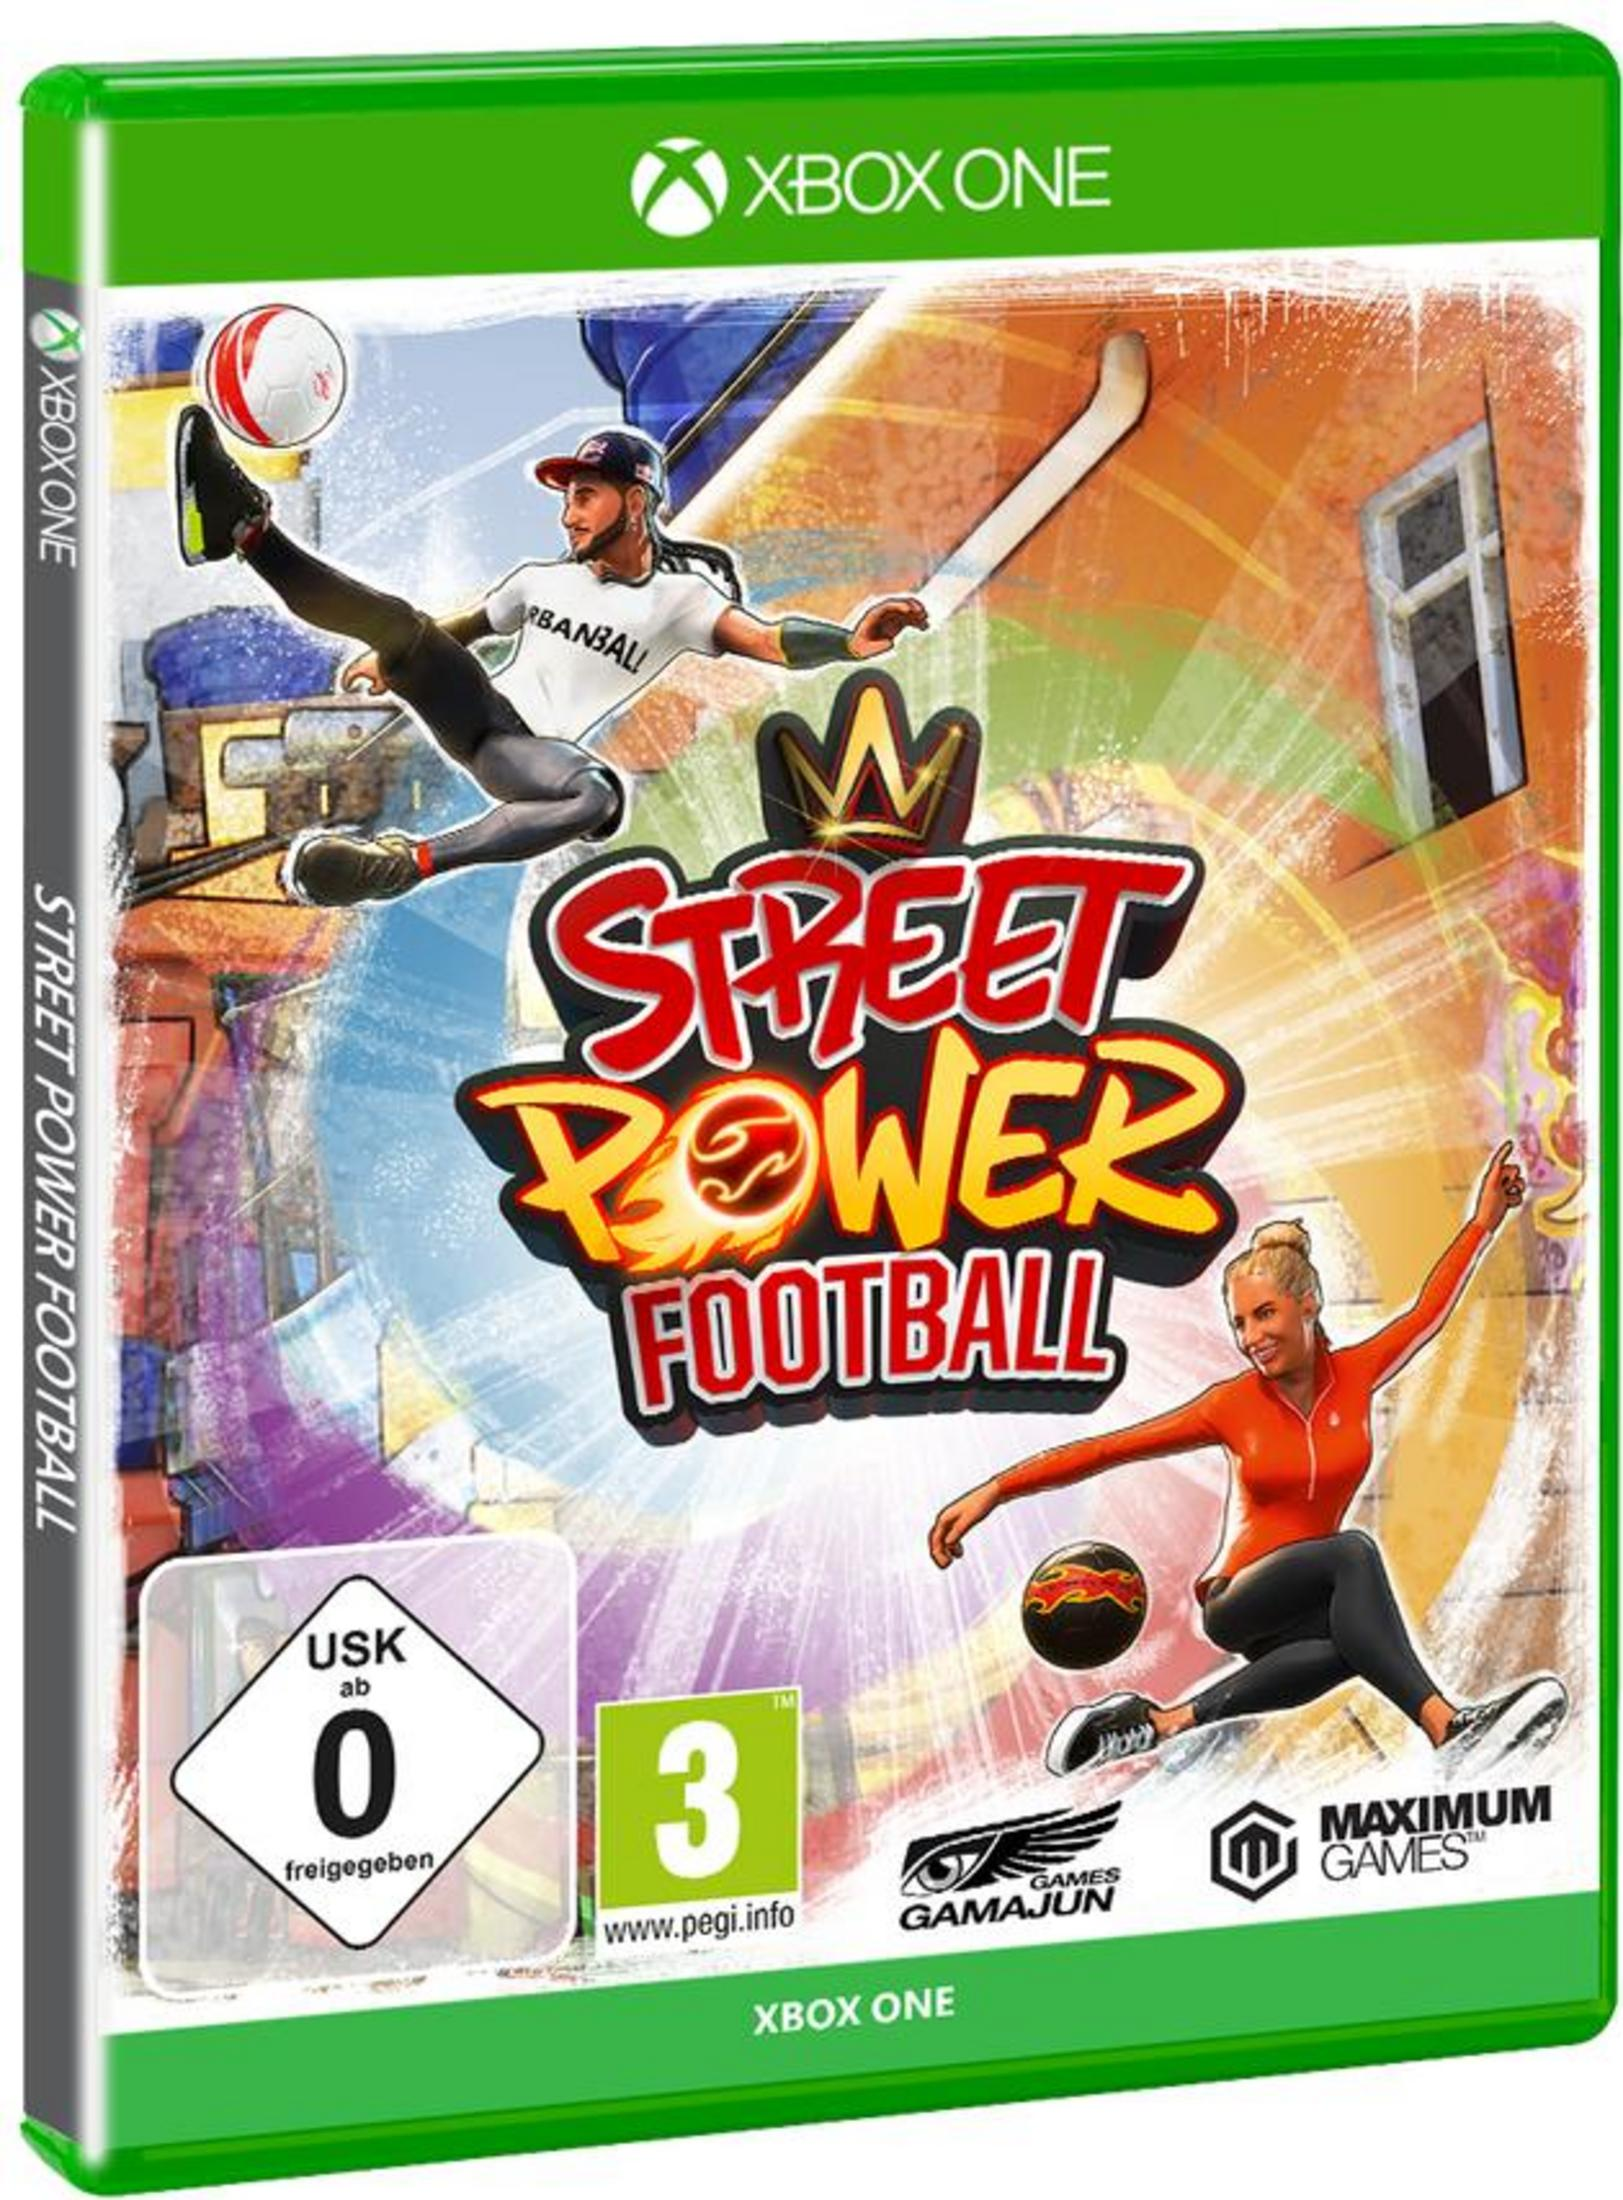 XB-ONE [Xbox Football One] Street - Power